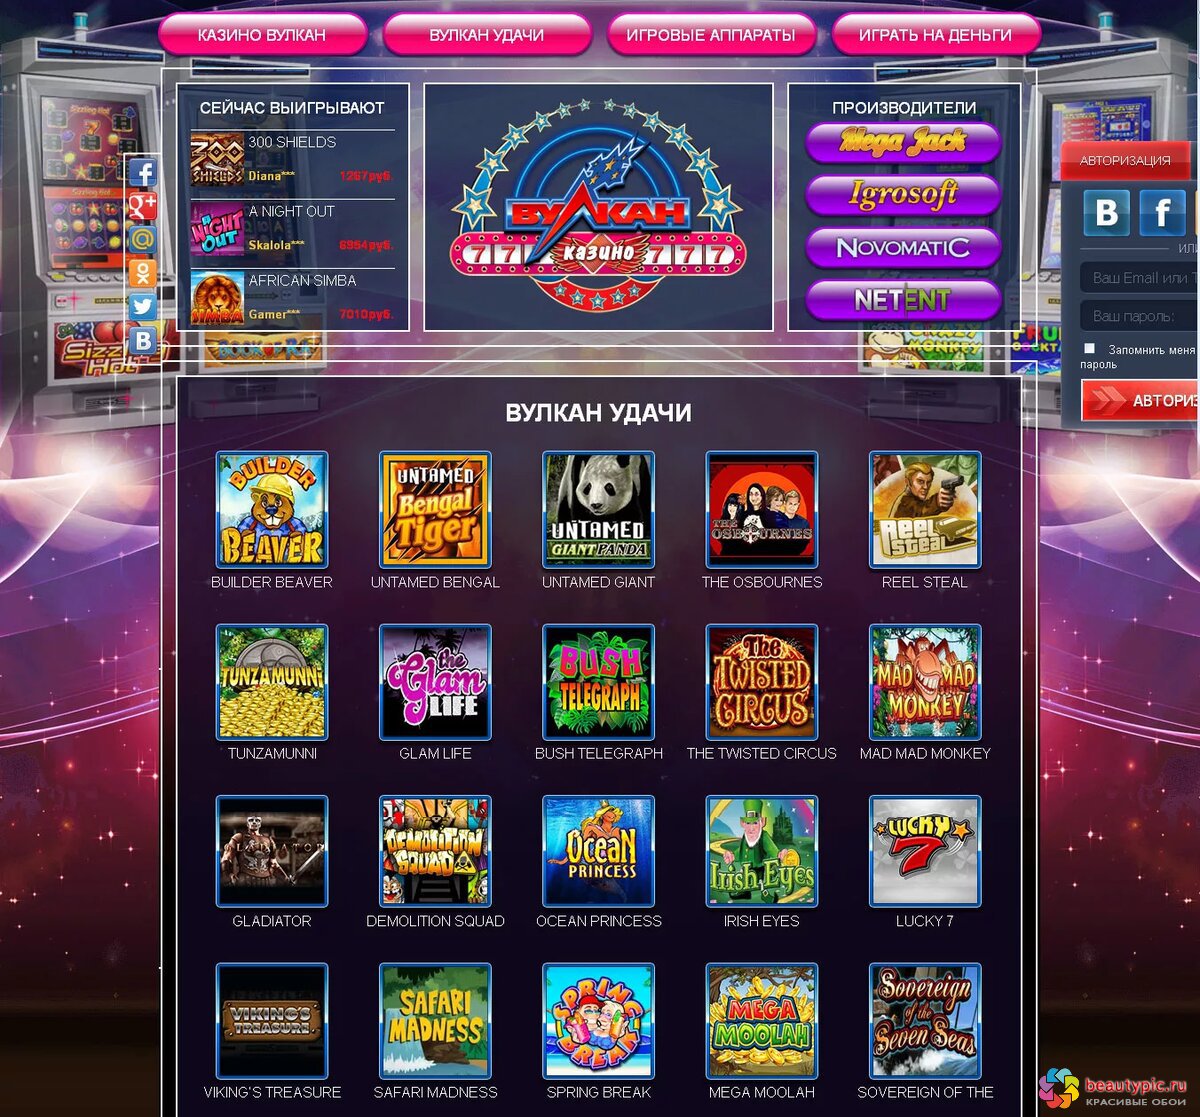 Играть бесплатно и без регистрации в онлайн-казино Вулкан